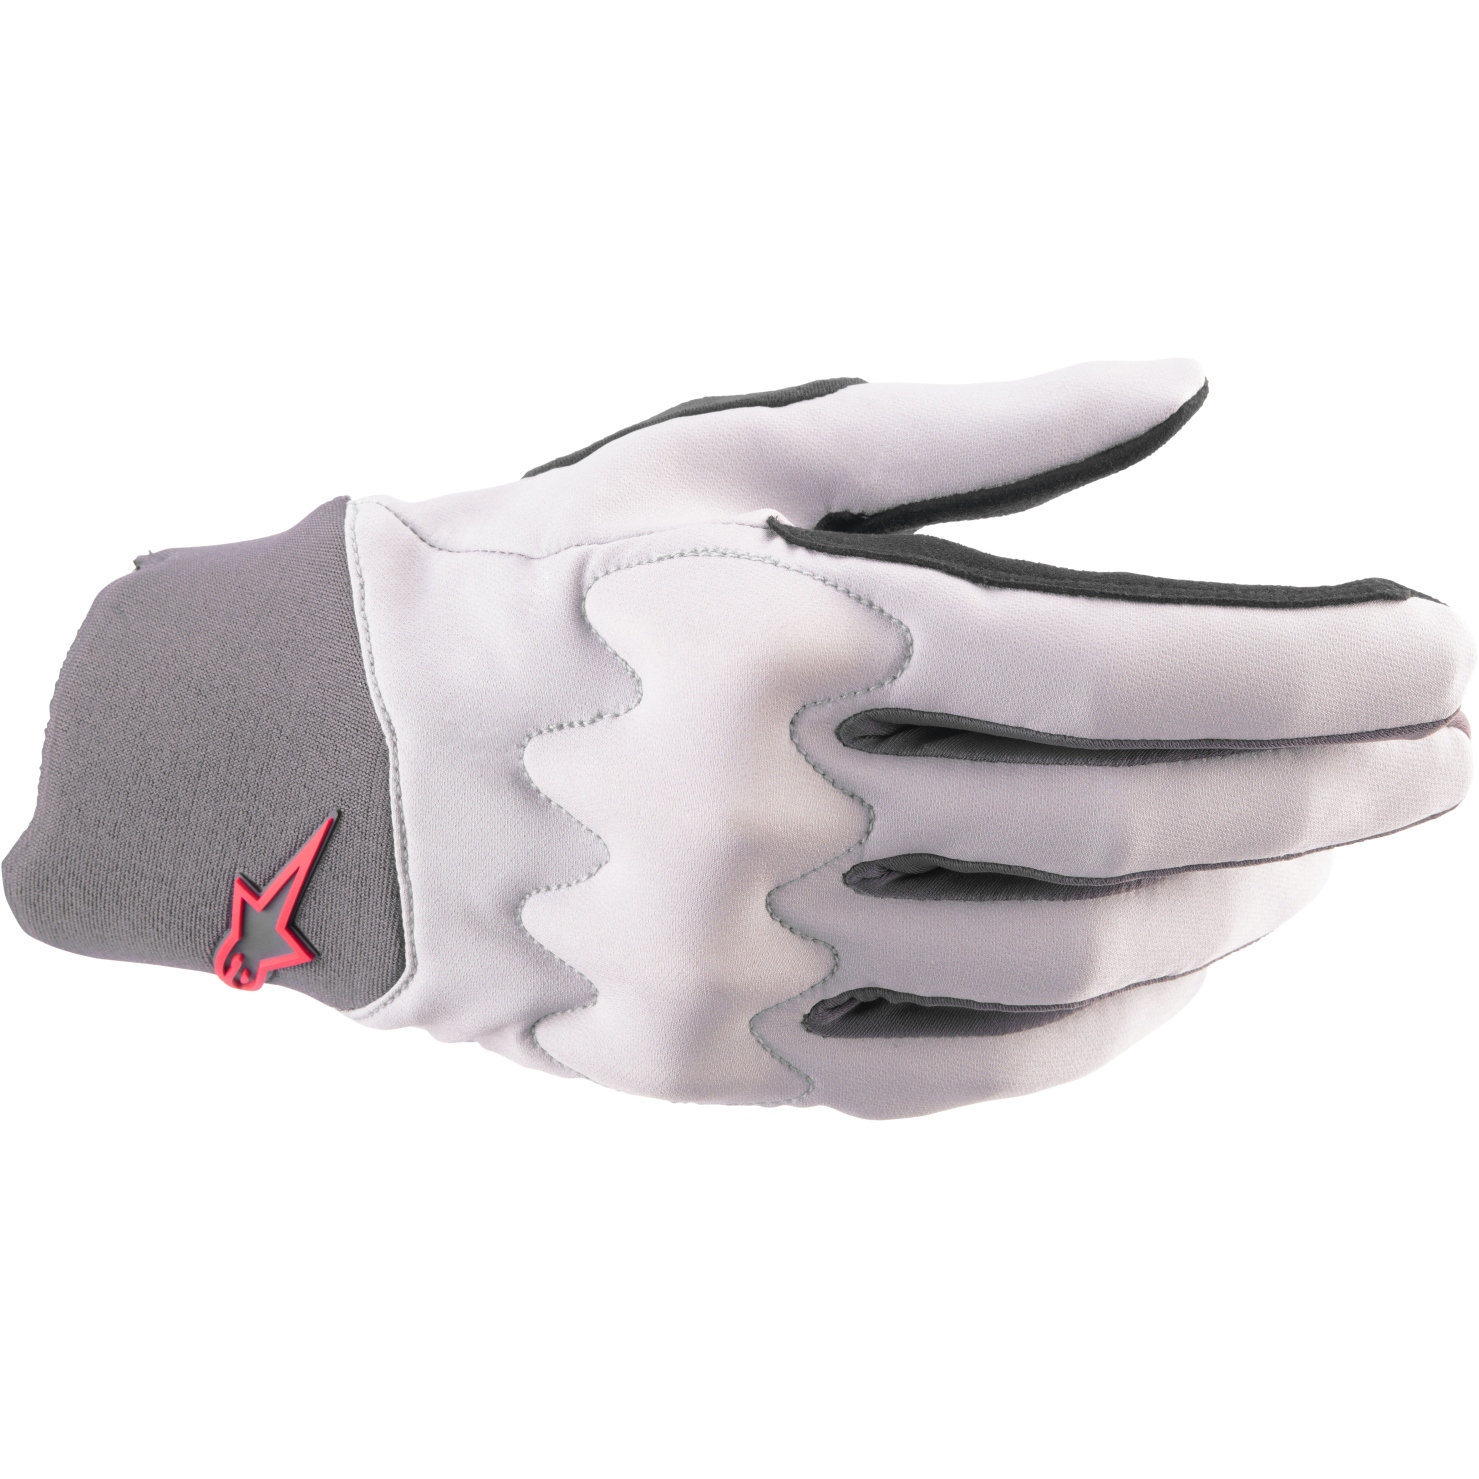 Productfoto van Alpinestars A-Supra Shield Handschoenen - light gray